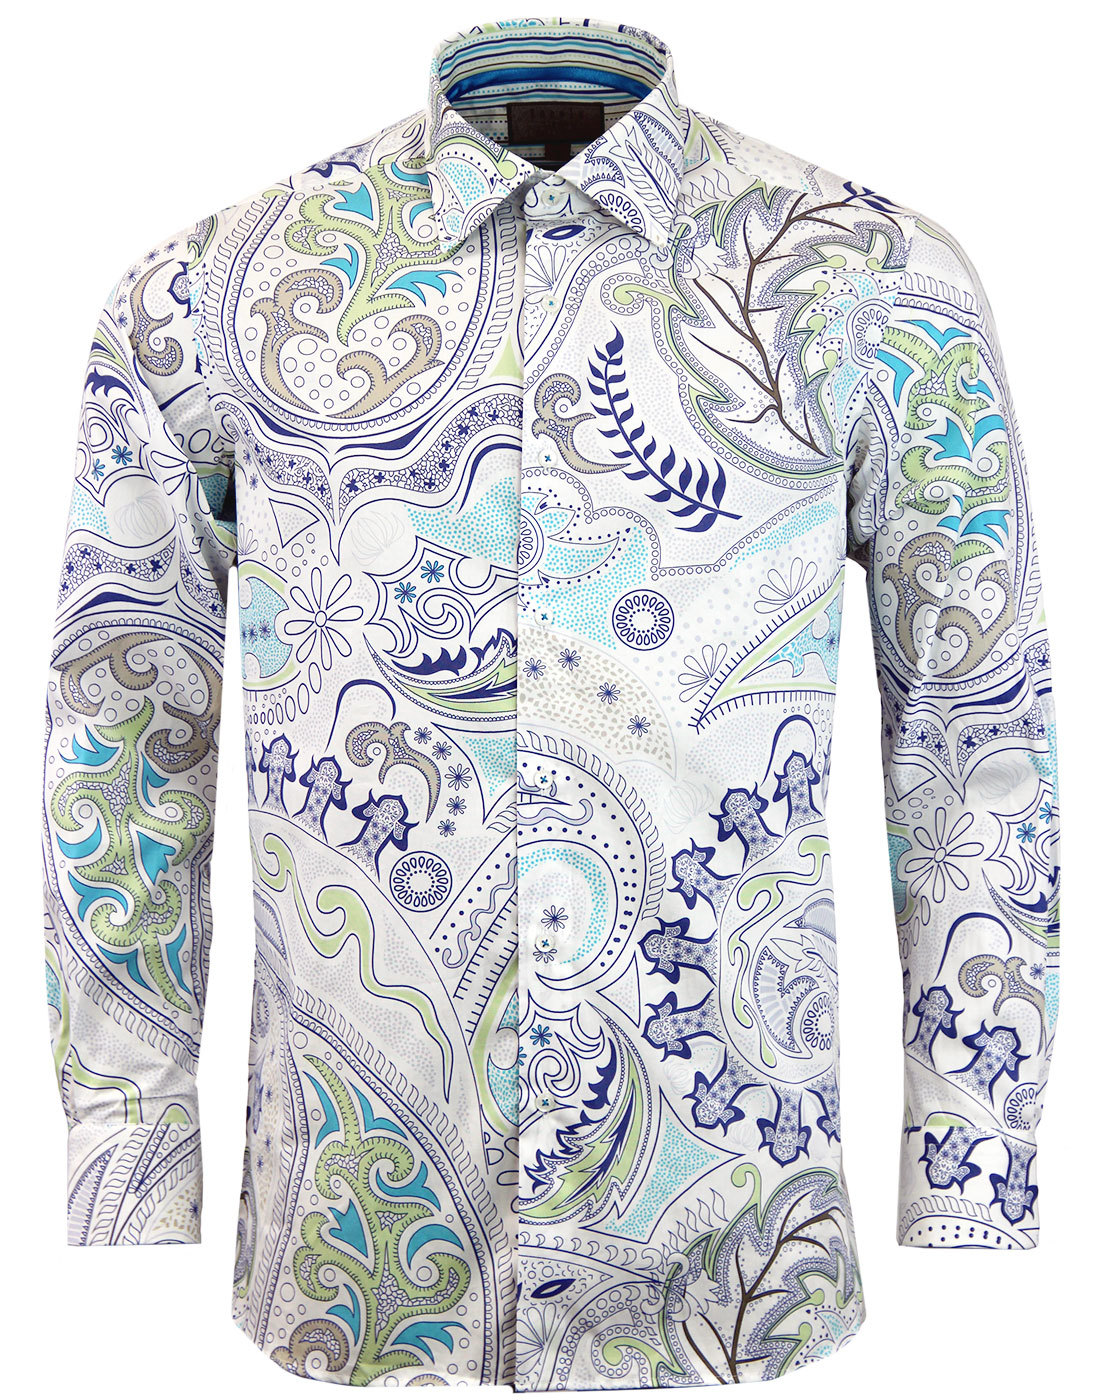 ROCOLA Men's Retro 60s Psychedelic Big Floral Paisley Print Shirt